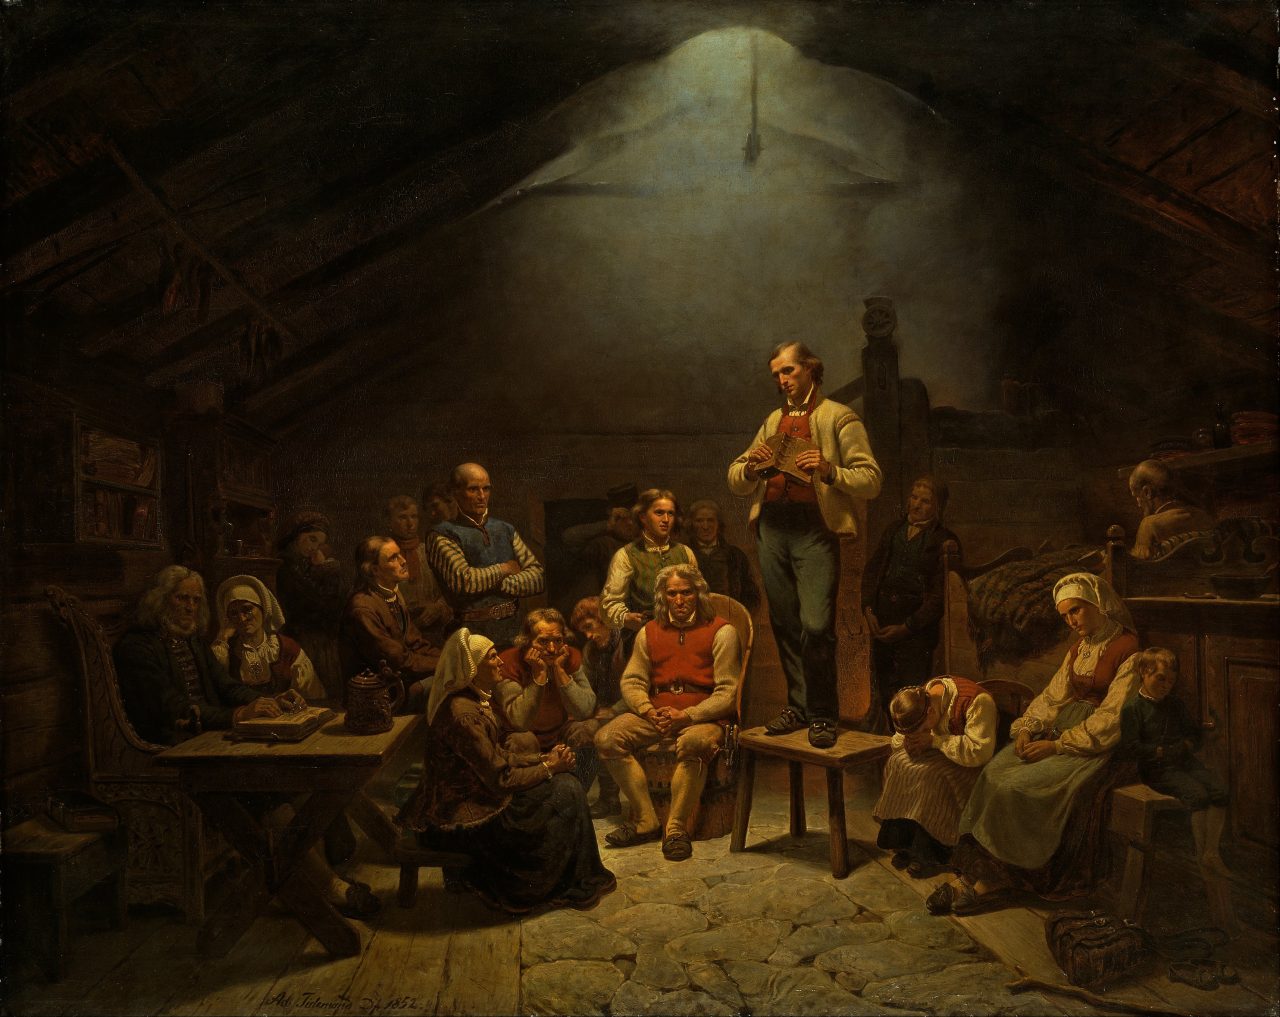 Haugianerne av Adolph Tidemand. En mann kledd står på en stol og snakker til en gruppe mennesker i et dunkelt rom. Maleri fra 1852.